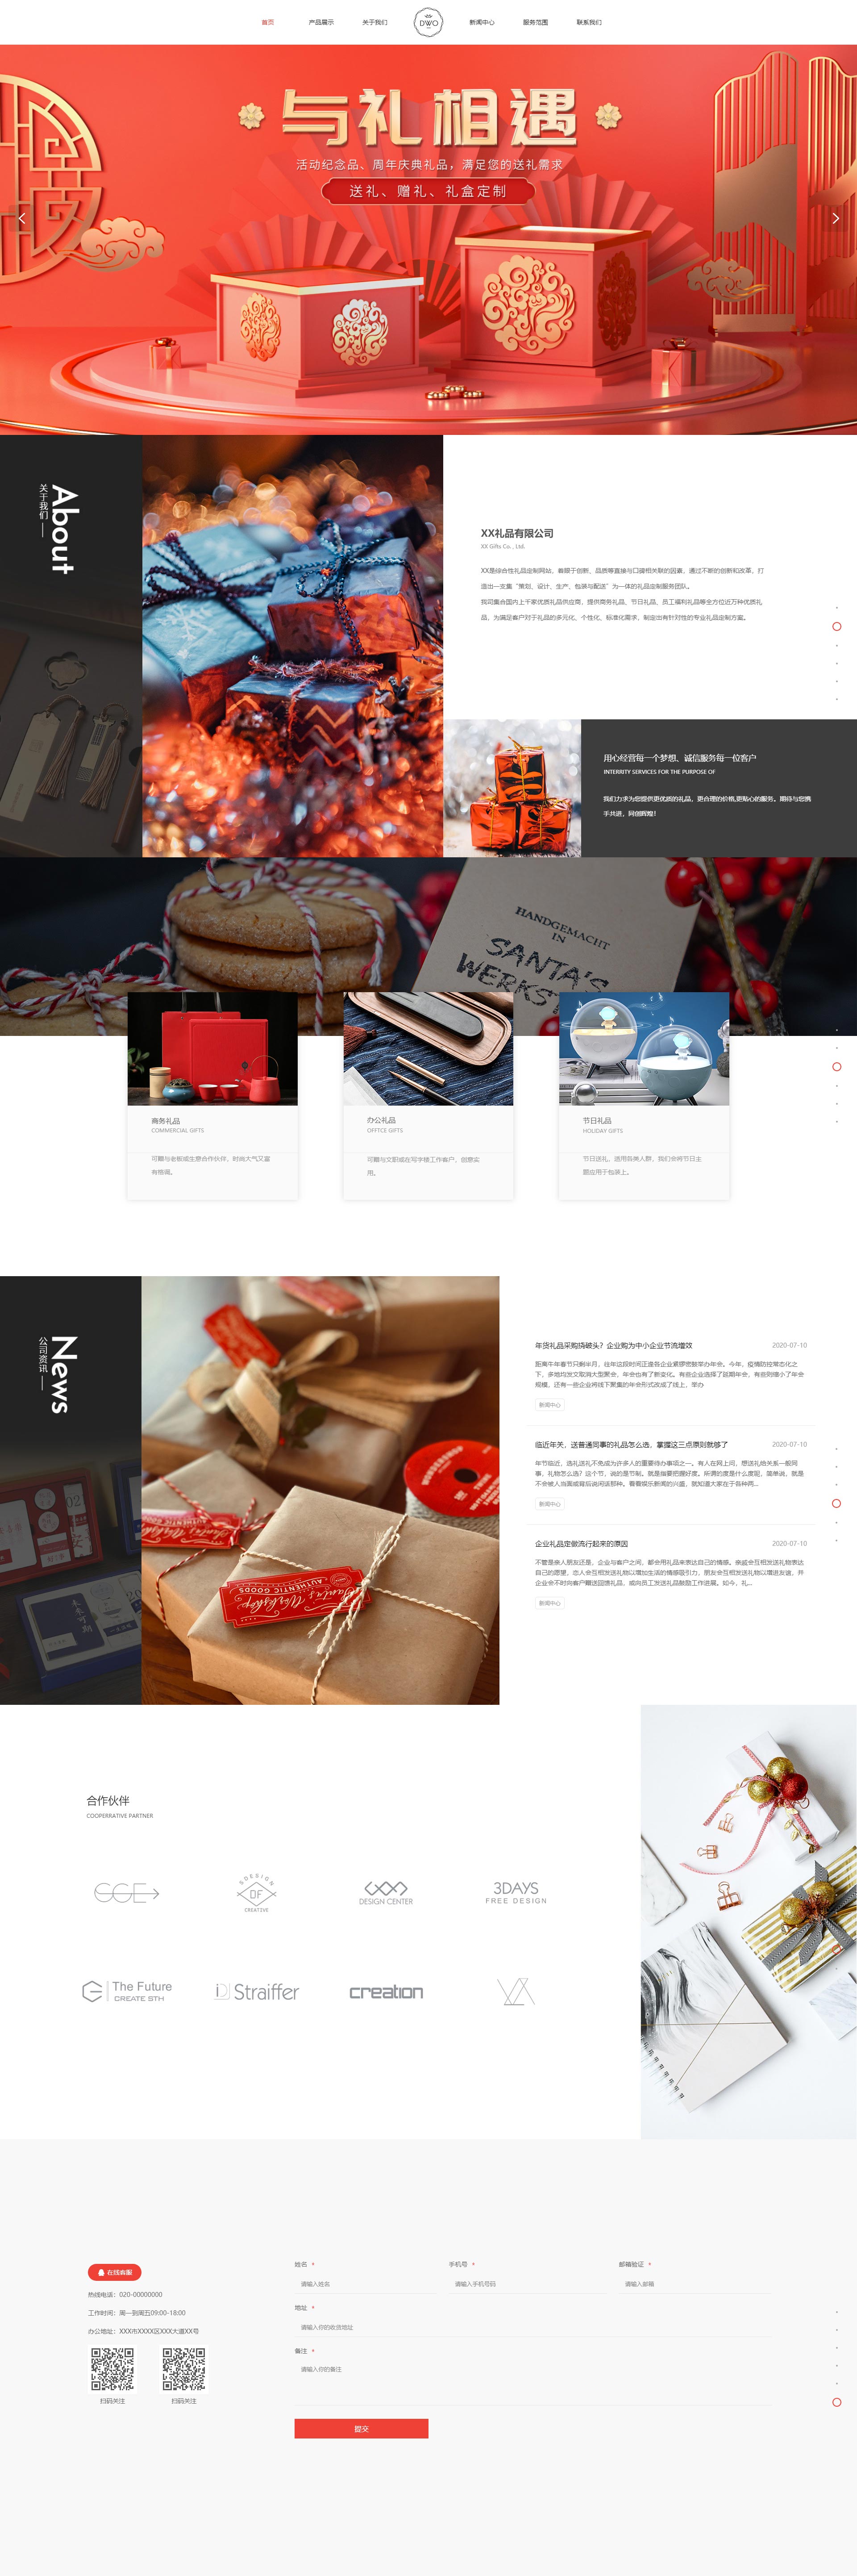 创意定制礼品服务网站模板